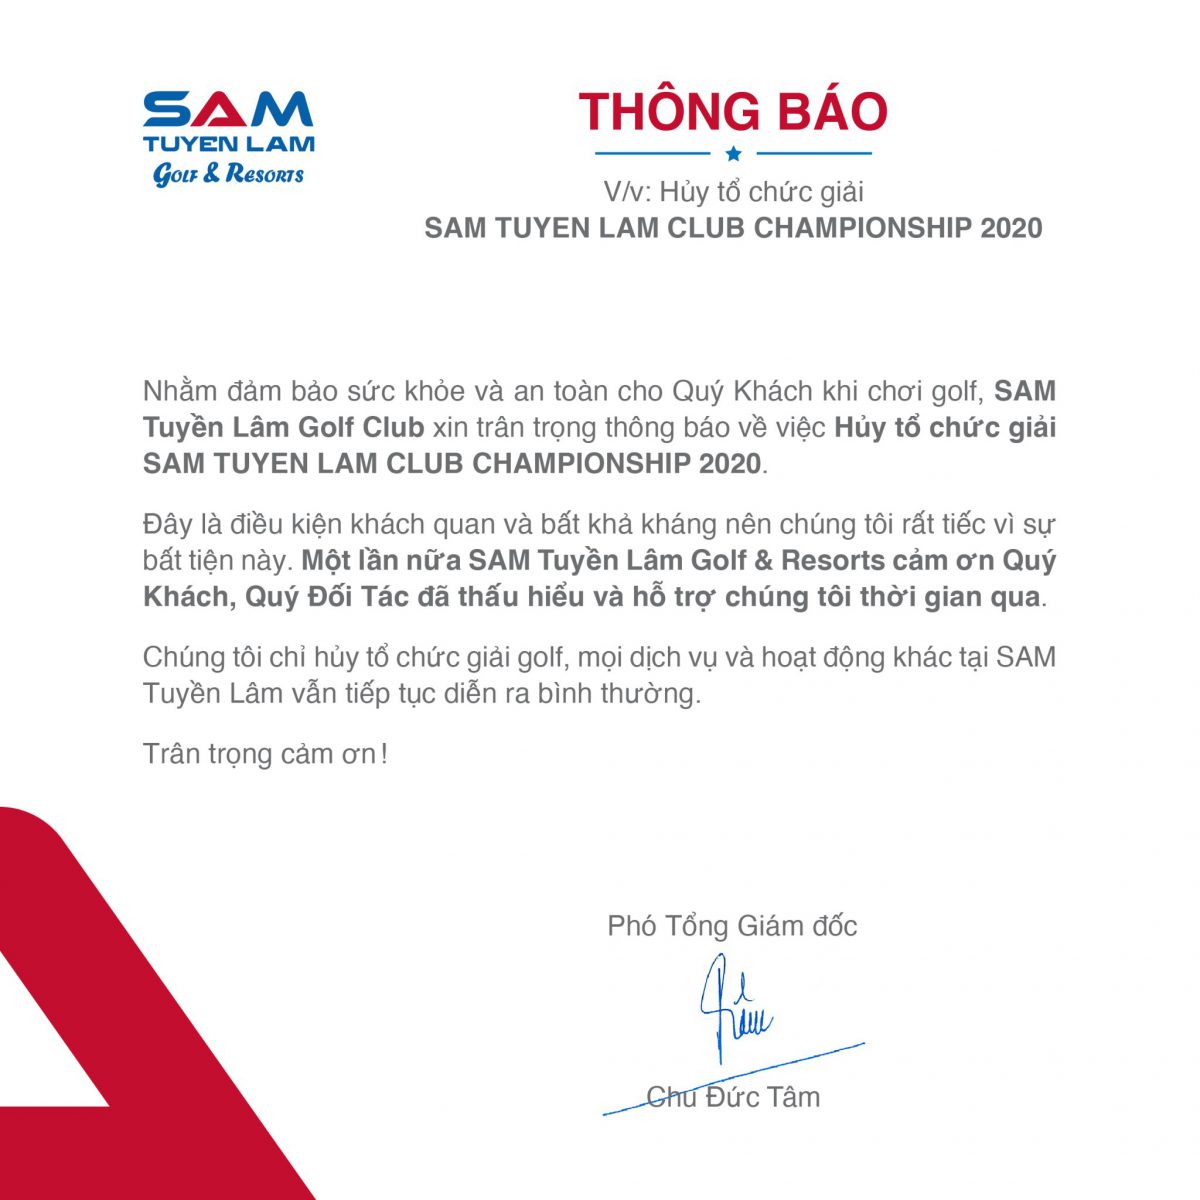 THÔNG BÁO: Hủy tổ chức giải SAM TUYỀN LÂM CLUB CHAMPIONSHIP 2020